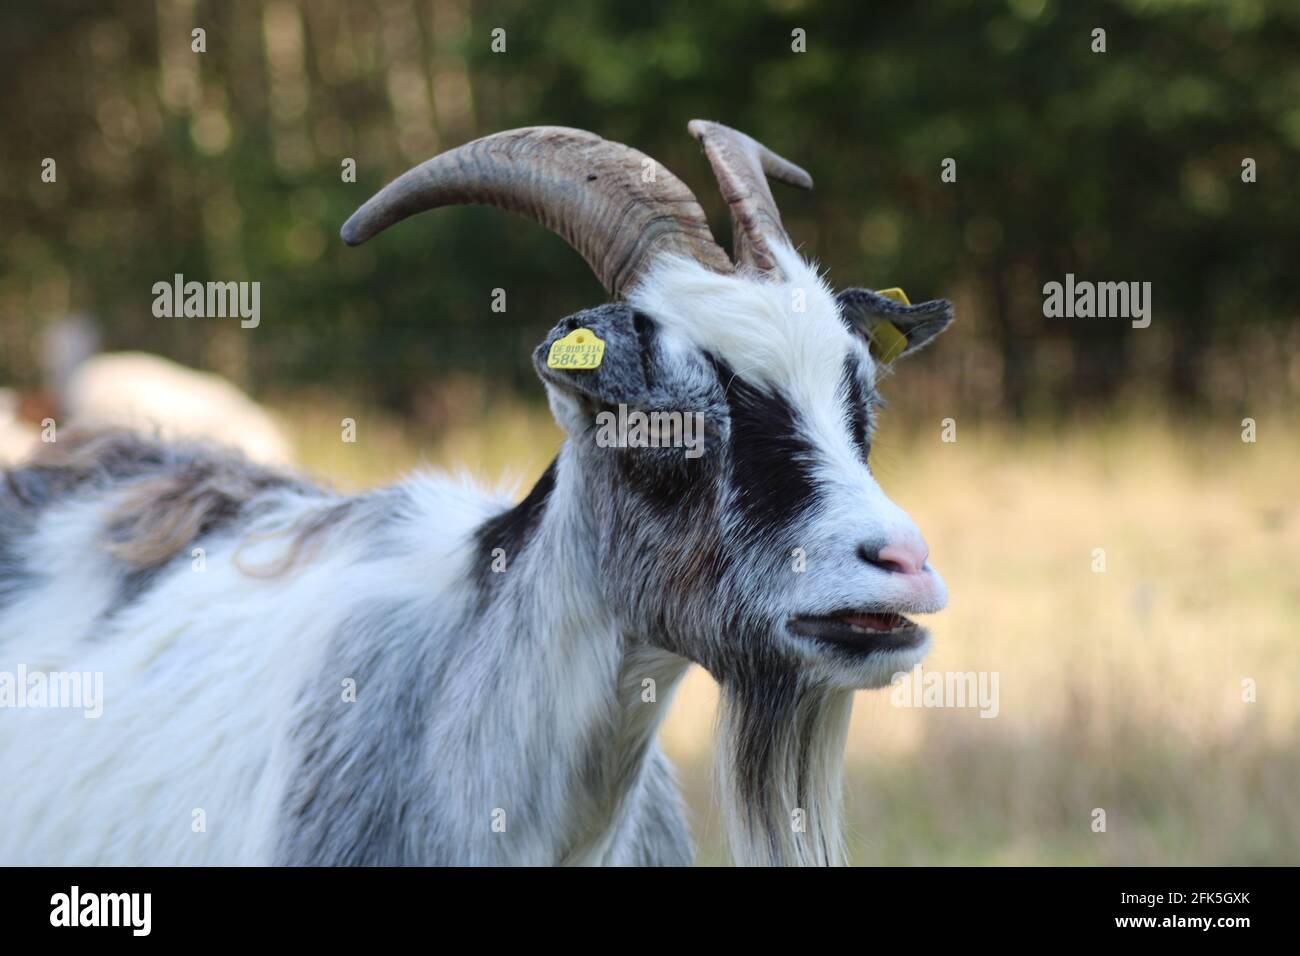 Portrait of a goat/ Portrait einer lustigen Ziege Stock Photo